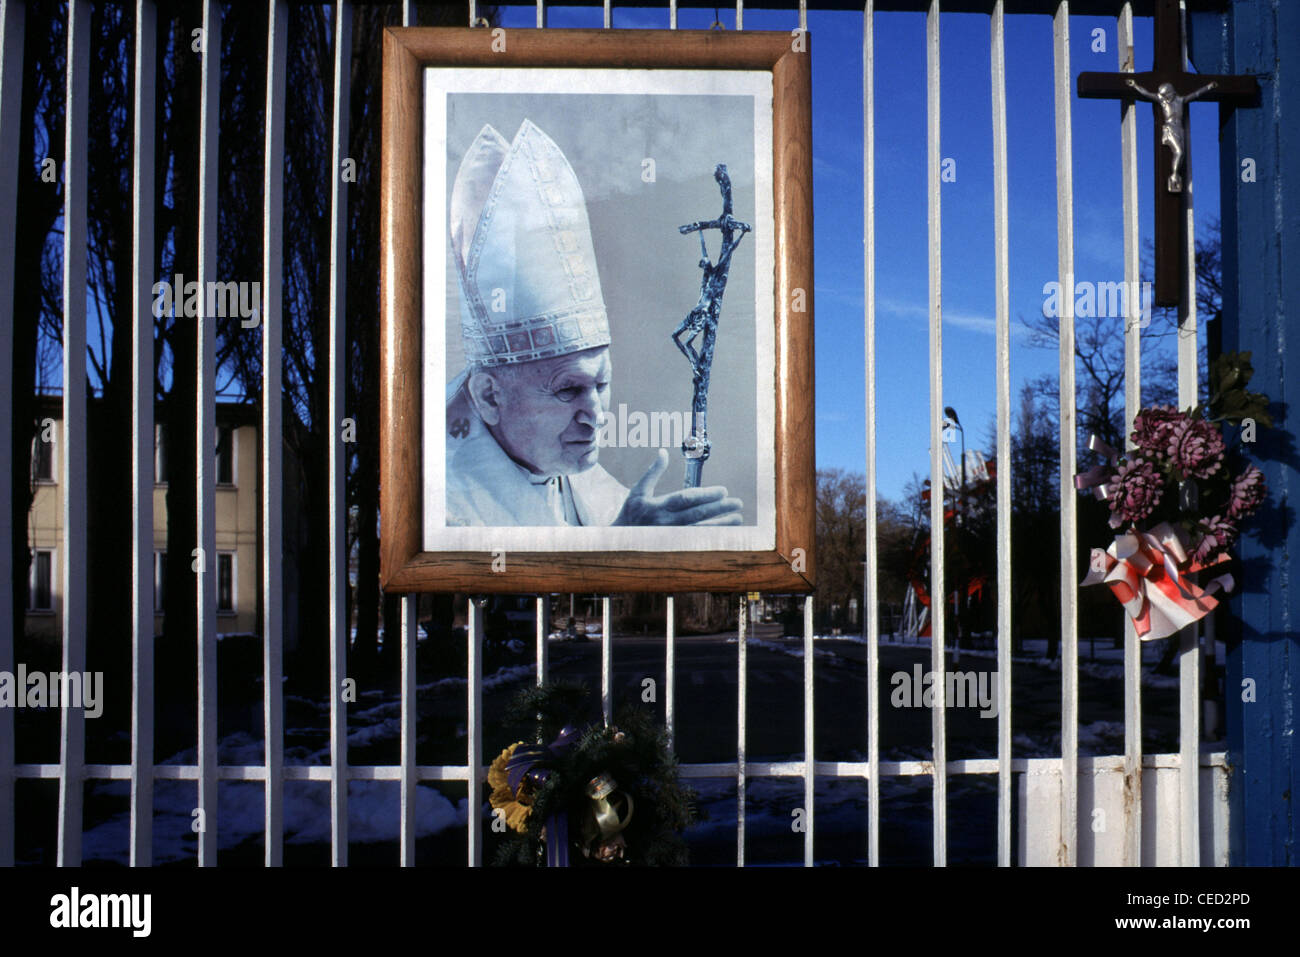 Photo de Karol Joseph Wojtyla pape John Paul II Chef de l'Église catholique romaine sur une porte de la ville de Gdansk Pologne Banque D'Images